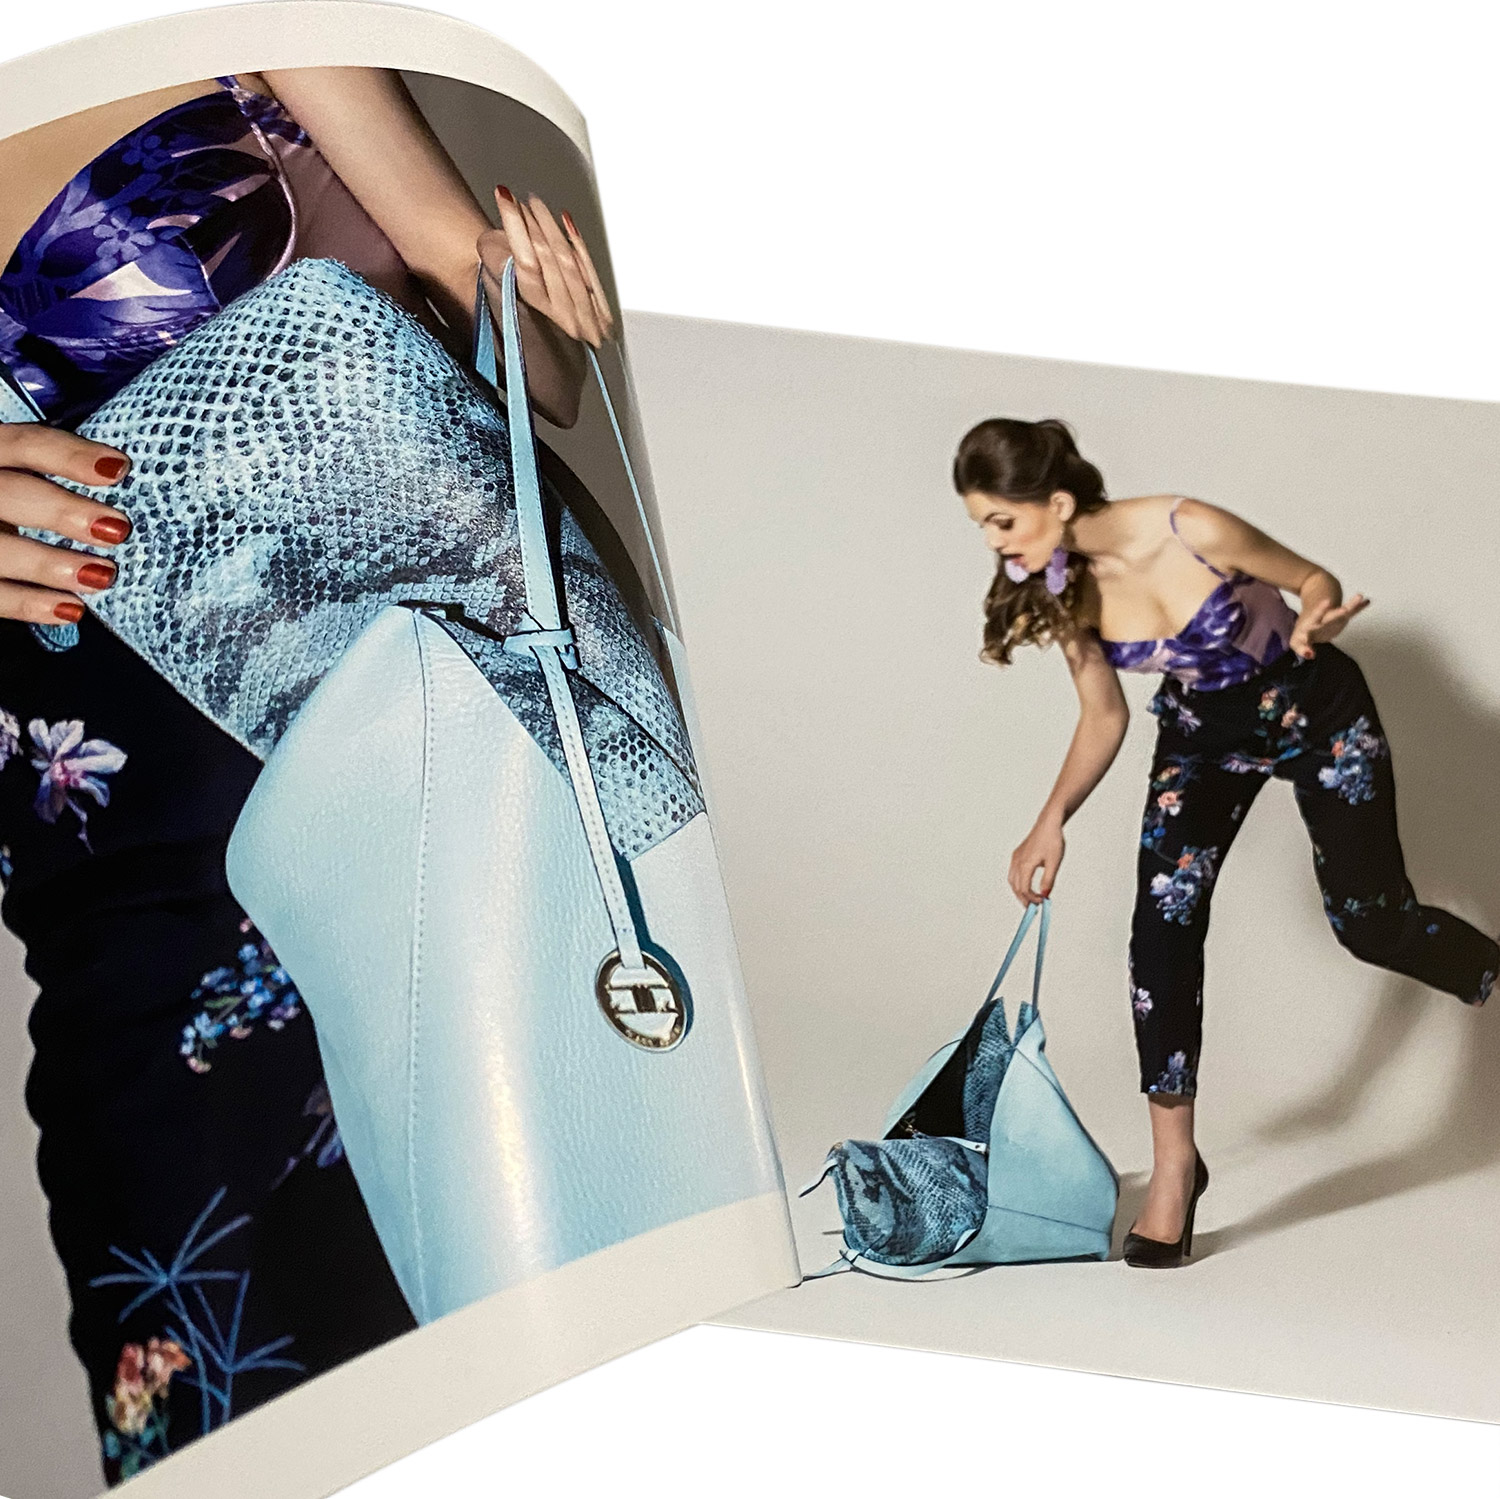 Catalogo di borse impaginato con servizio fotografico moda